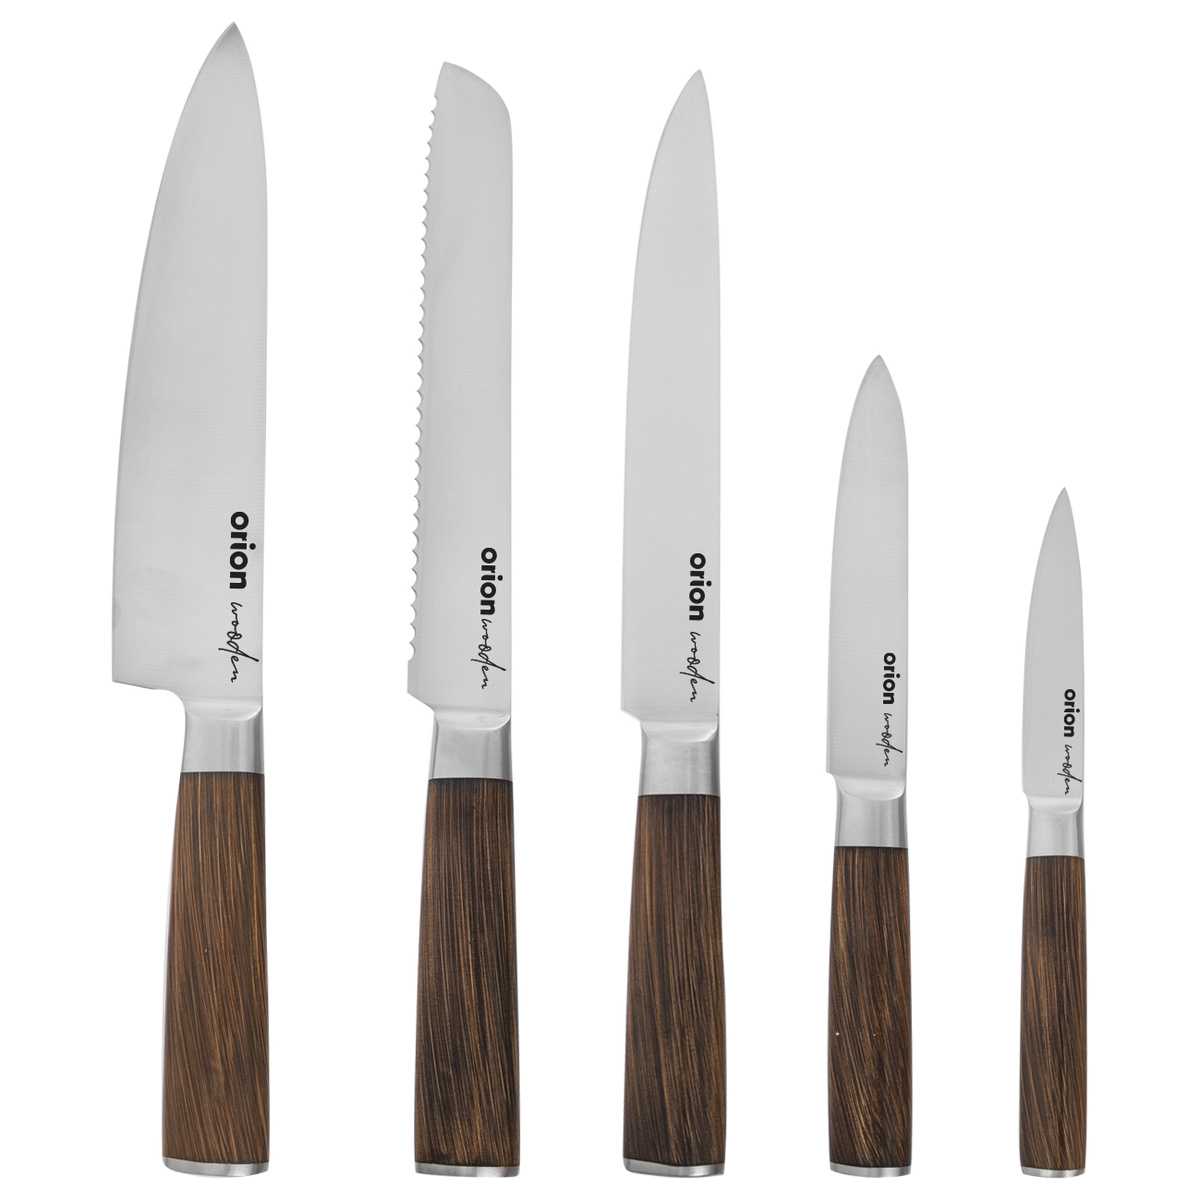 Orion Sada kuchyňských nožů Wooden